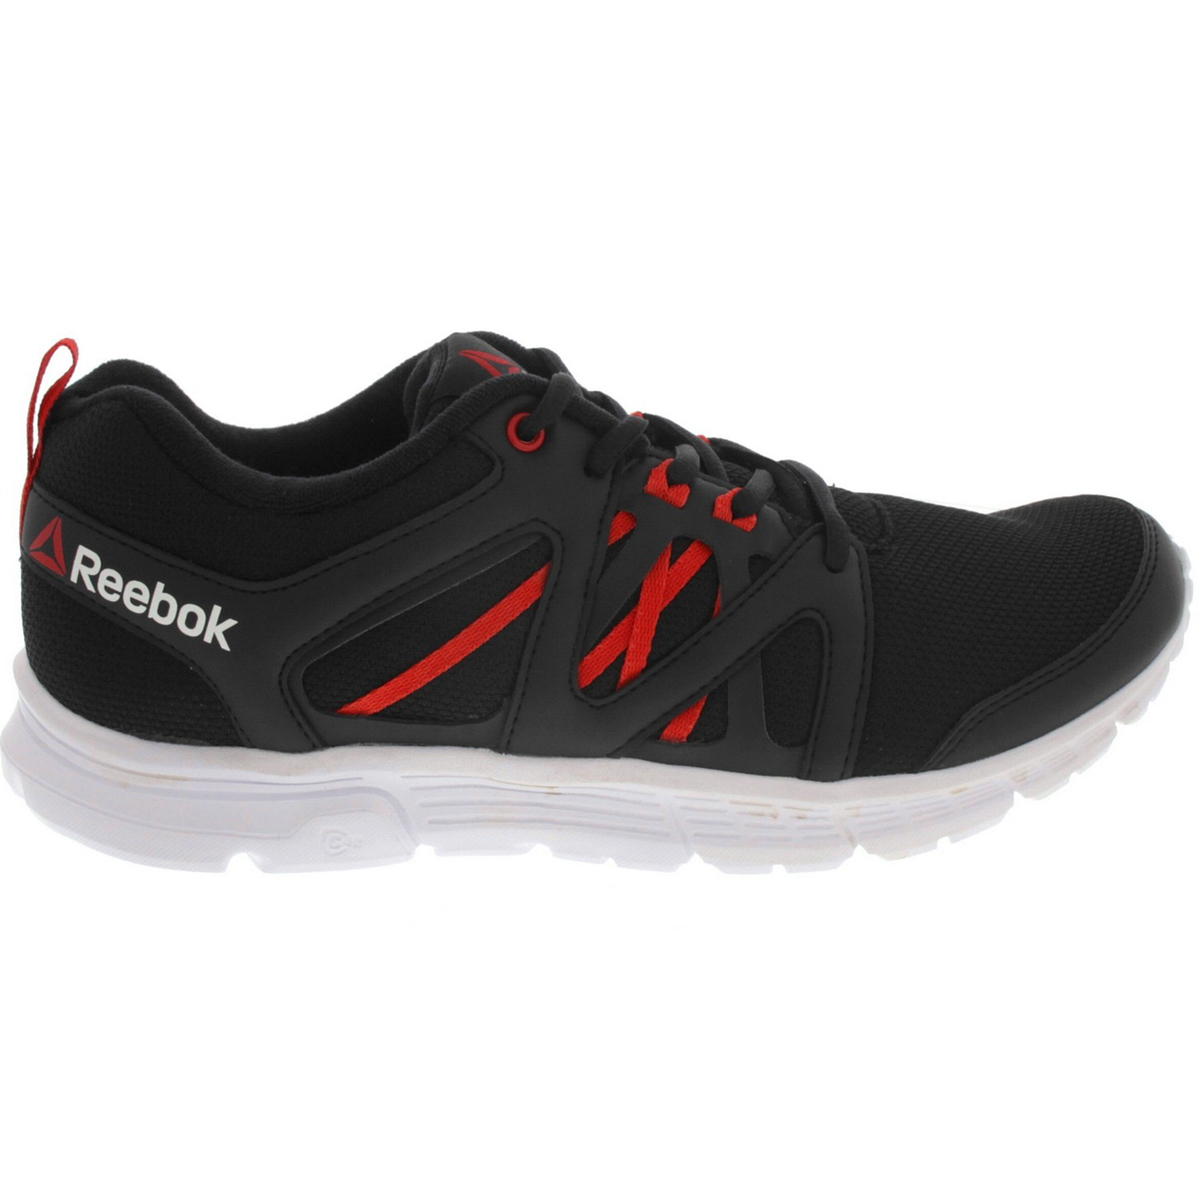 reebok shoes offer in kuwait